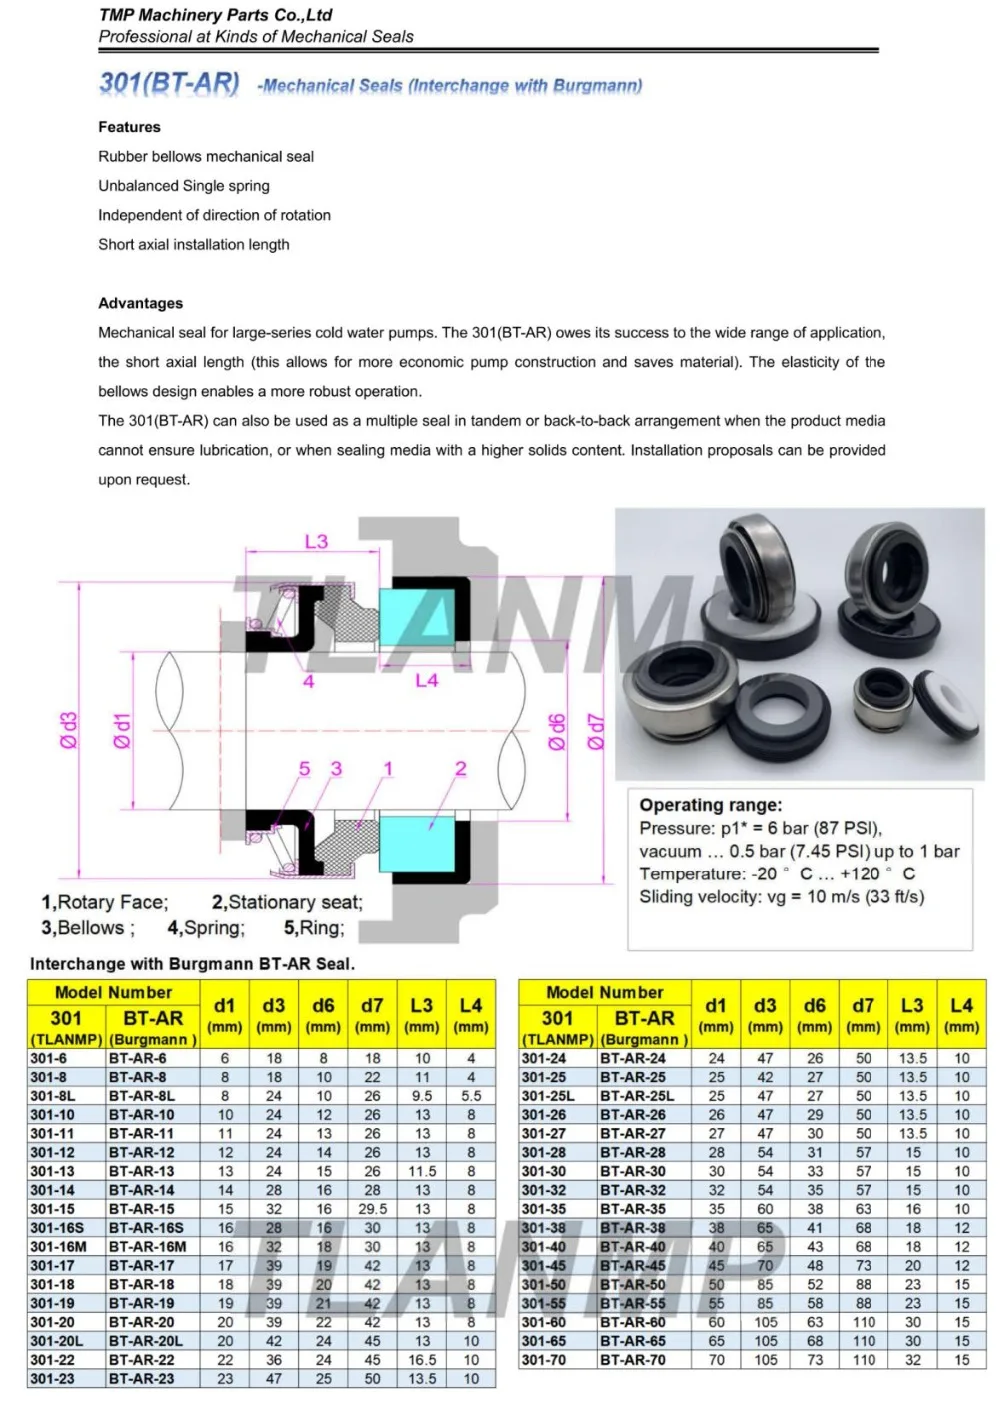 301-45, BT-AR-45 резиновые Bellow механические уплотнения(материал: CA/CE/NBR, CA/SIC/VIT) | эквивалент Burgmann BT-AR уплотнения